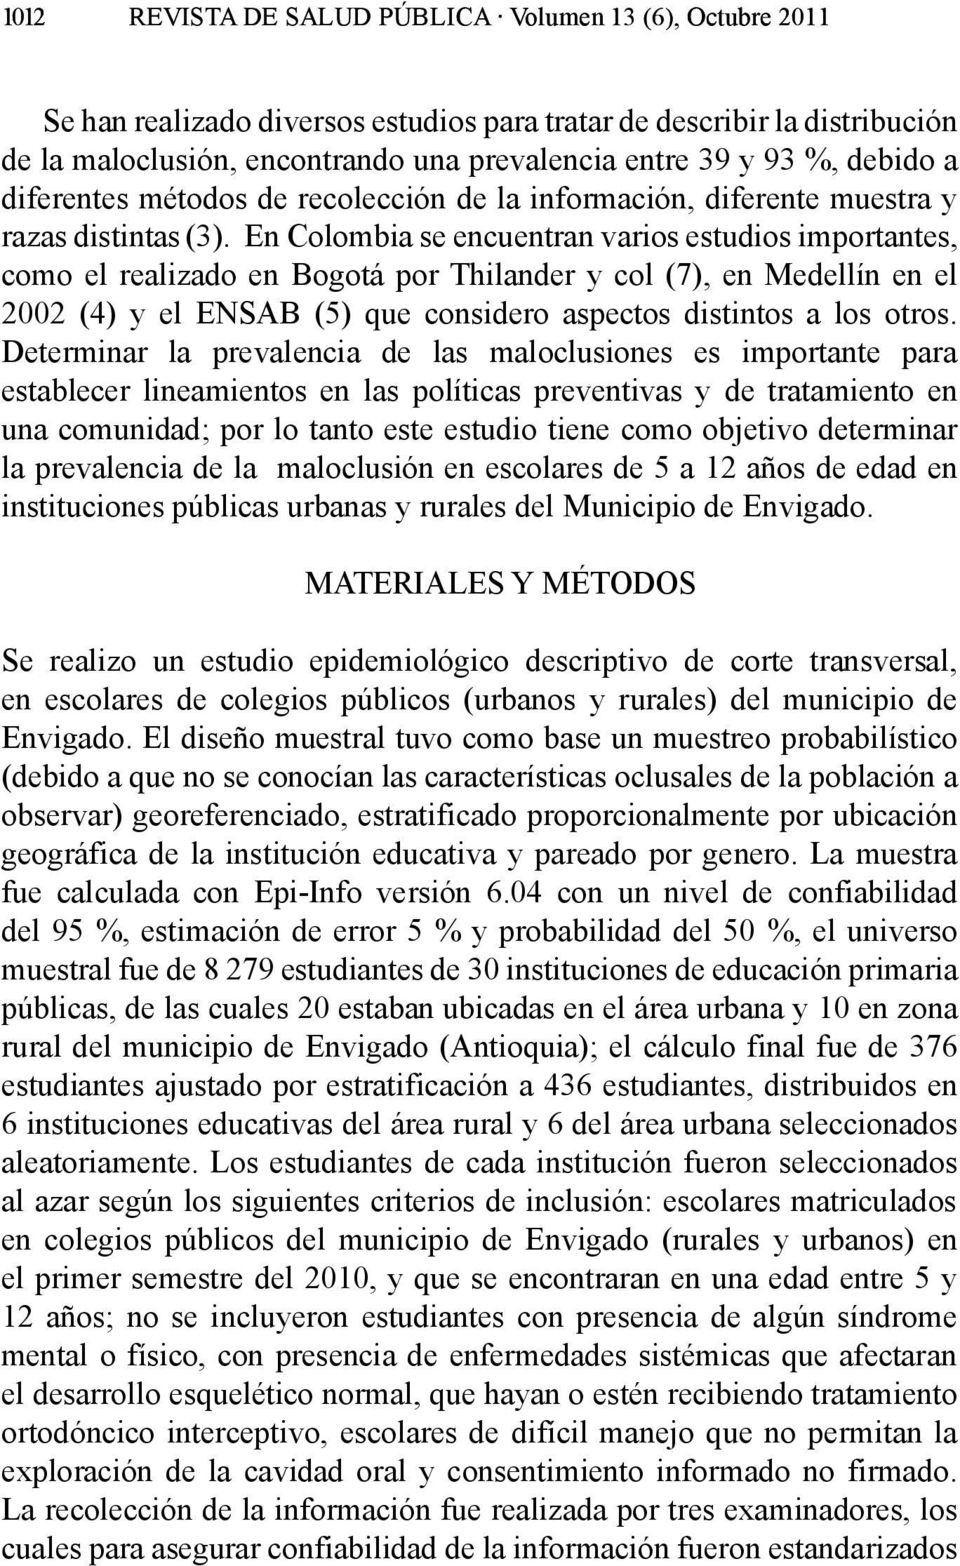 En Colombia se encuentran varios estudios importantes, como el realizado en Bogotá por Thilander y col (7), en Medellín en el 2002 (4) y el ENSAB (5) que considero aspectos distintos a los otros.